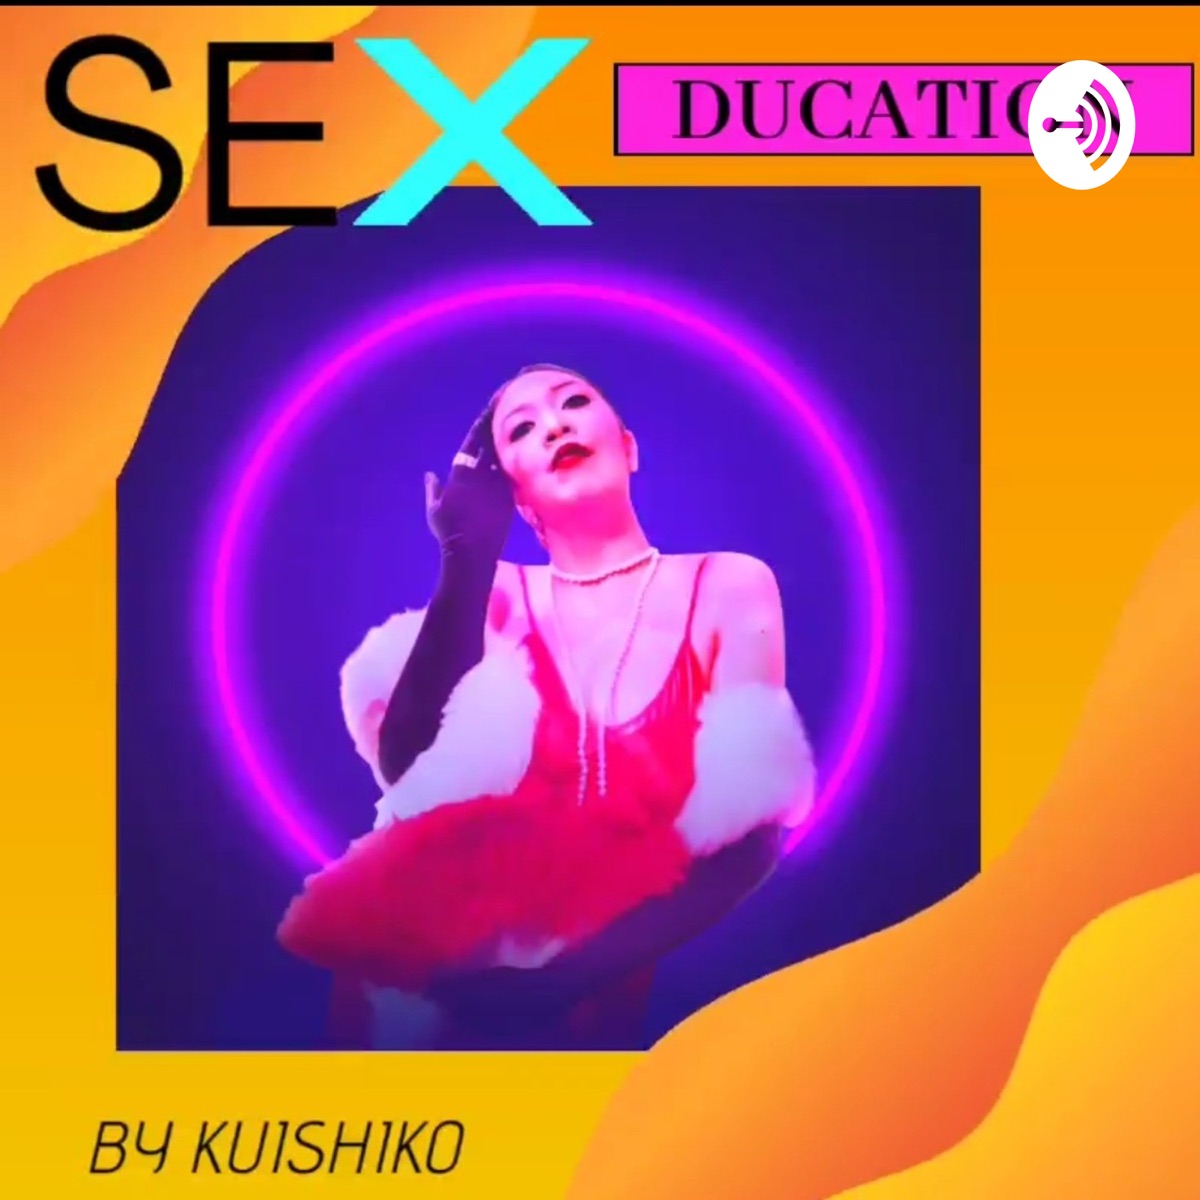 Sexducation 